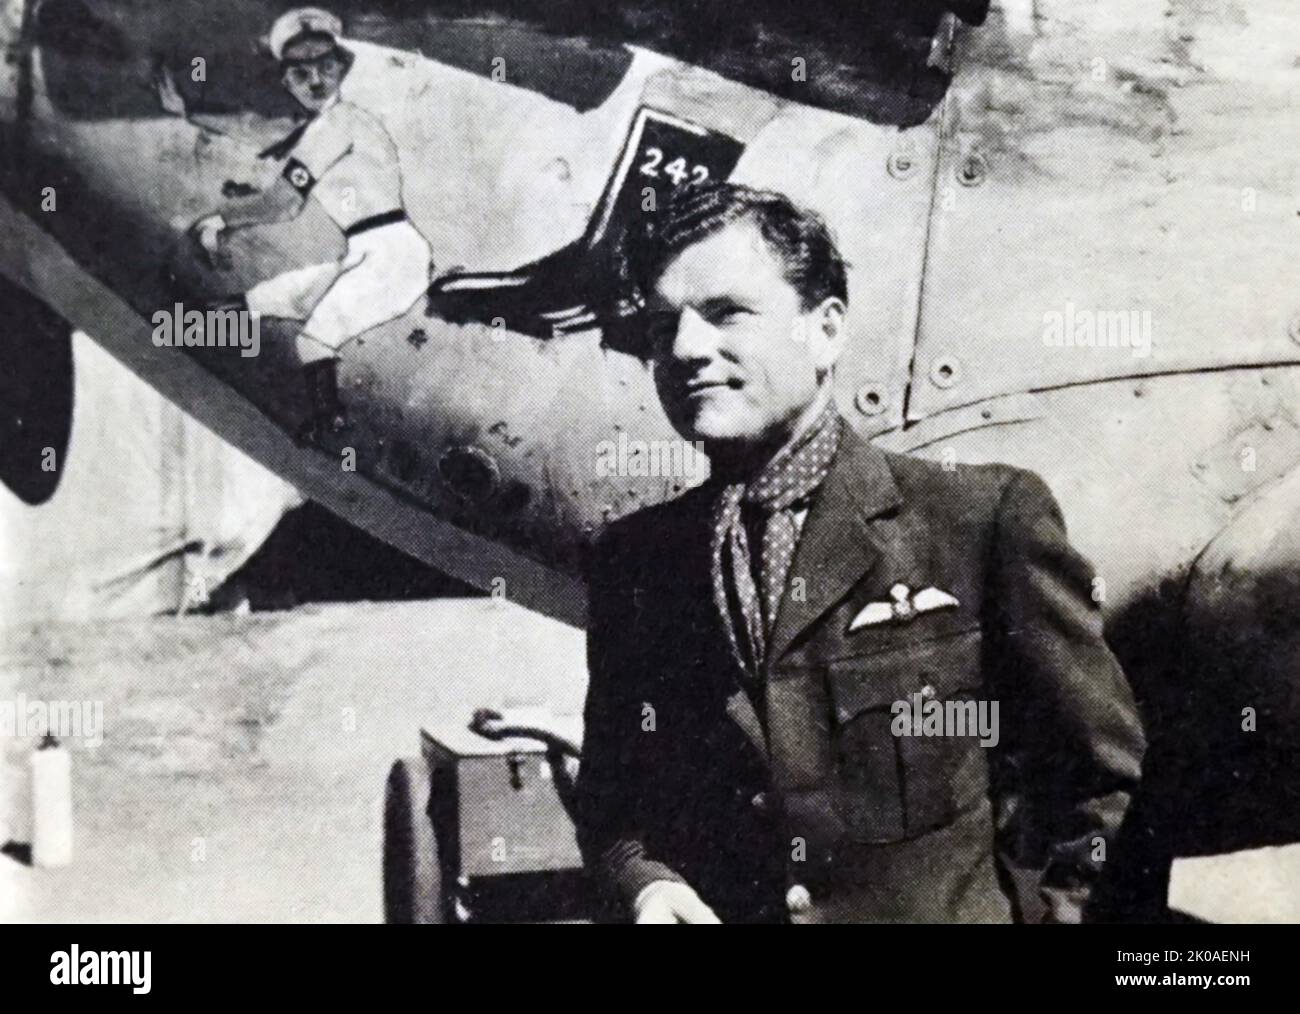 Der Gruppenkapitän Sir Douglas Bader (1910 - 1982) war während des Zweiten Weltkriegs ein Flugass der Royal Air Force. Ihm wurden 22 Luftsiege, vier gemeinsame Siege, sechs Bewährbare, ein gemeinsamer wahrscheinlicher und 11 beschädigte feindliche Flugzeuge gutgeschrieben Stockfoto